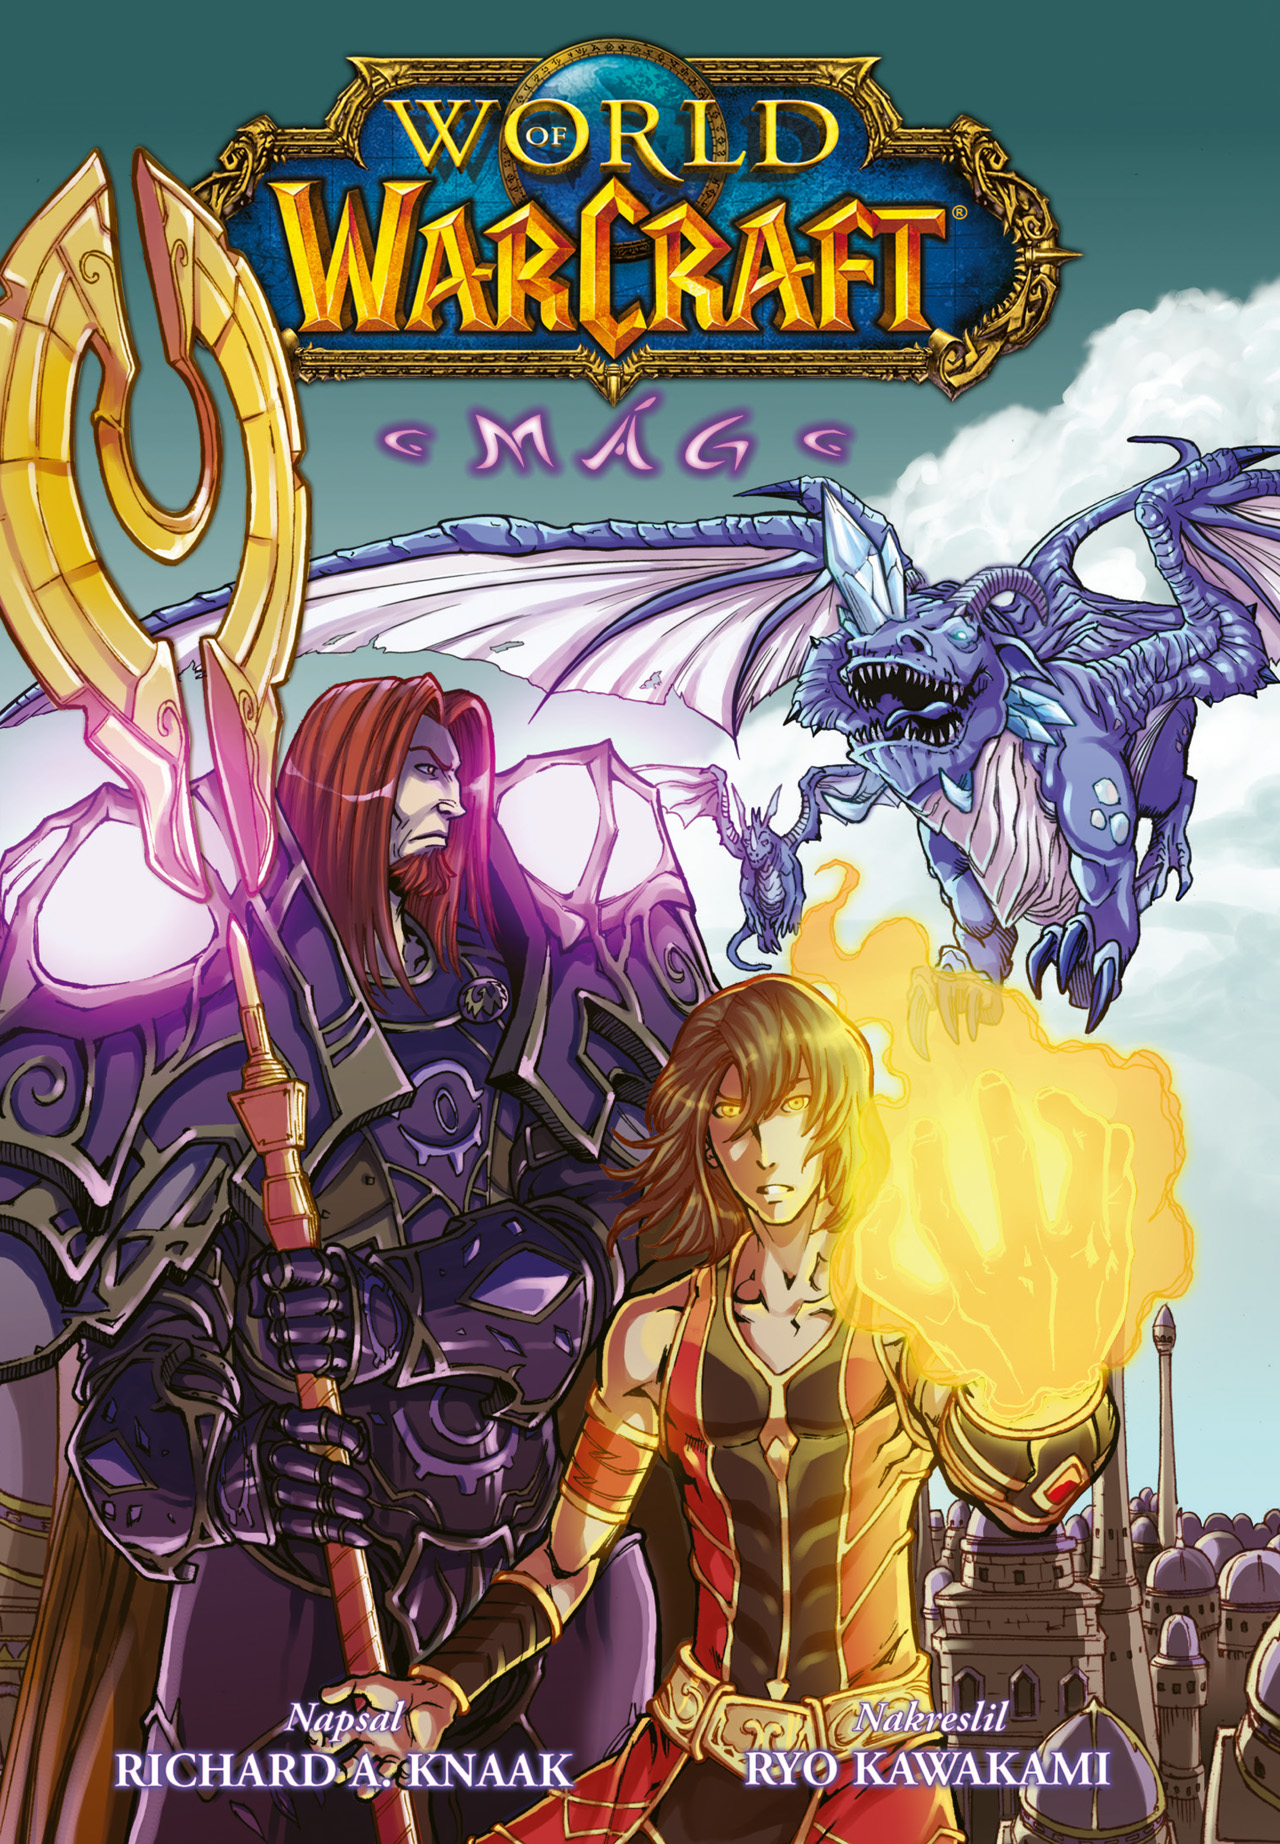 obrázek k novince - World of Warcraft: Mág